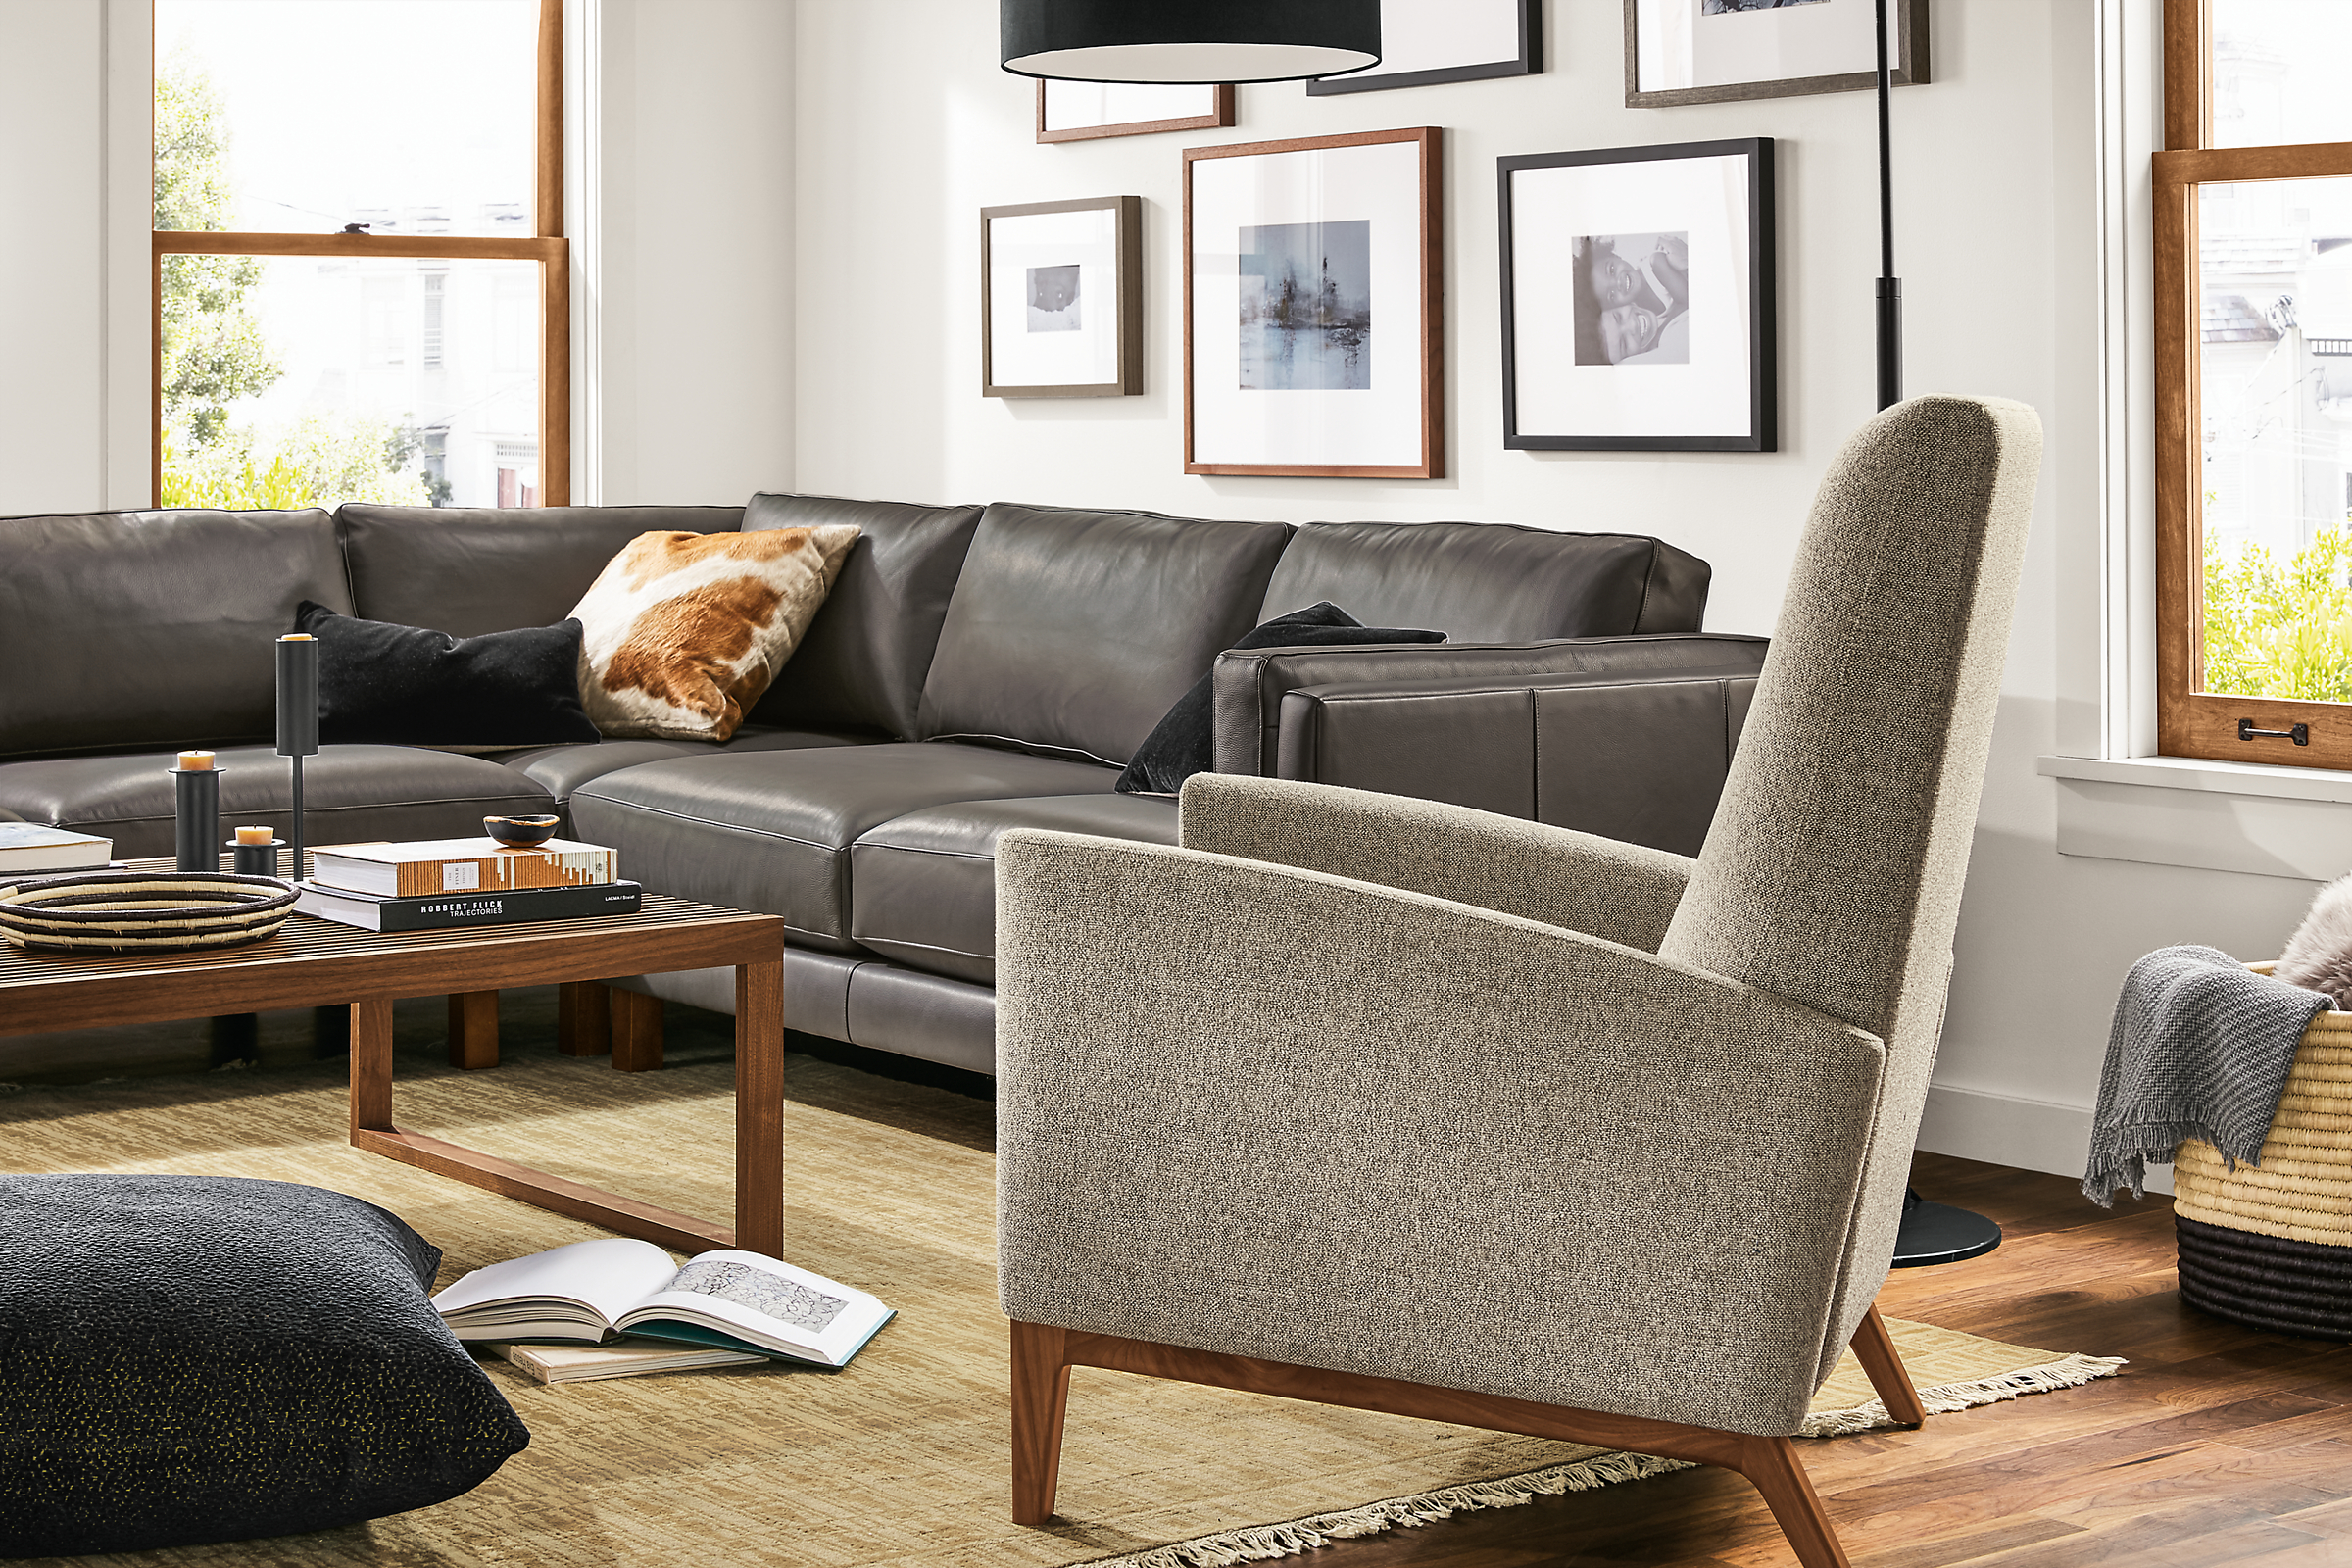 Detail of Arlo recliner in Tatum grey fabric in living room setting.